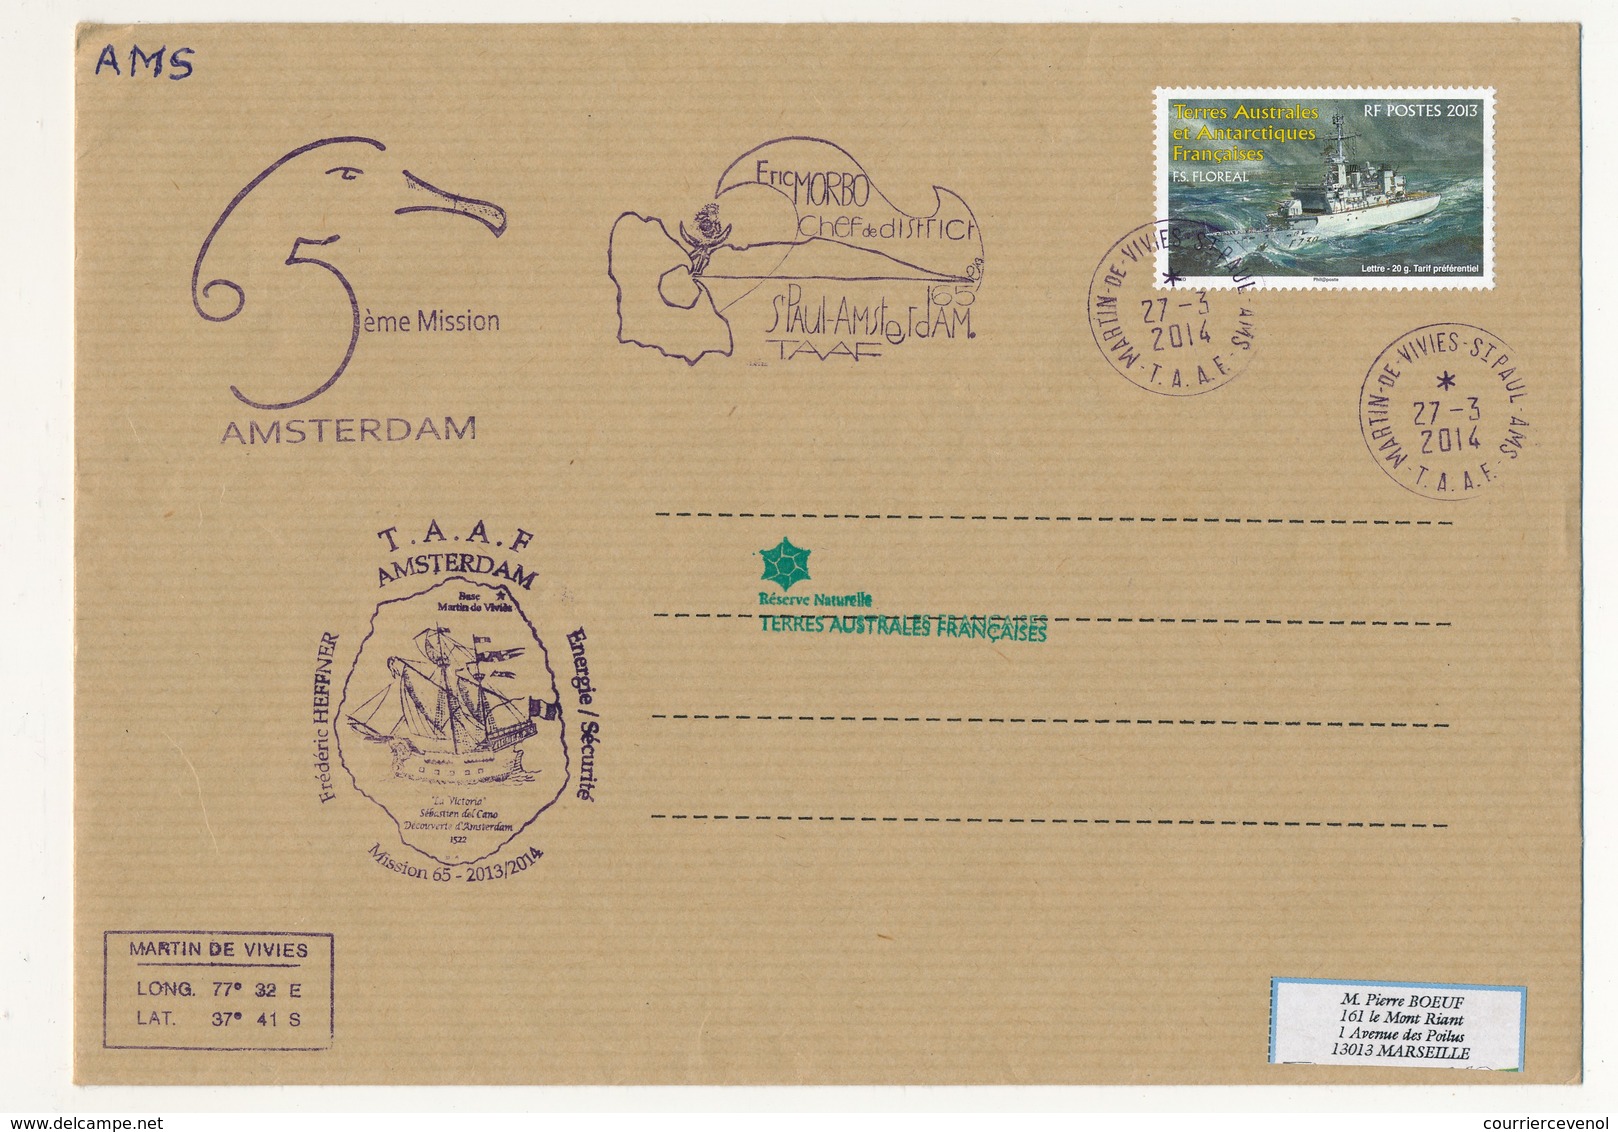 T.A.A.F - Enveloppe Martin De Vivies - St Paul Ams - 27/3/2014 - FS Floreal / 5eme Mission Amsterdam - Brieven En Documenten